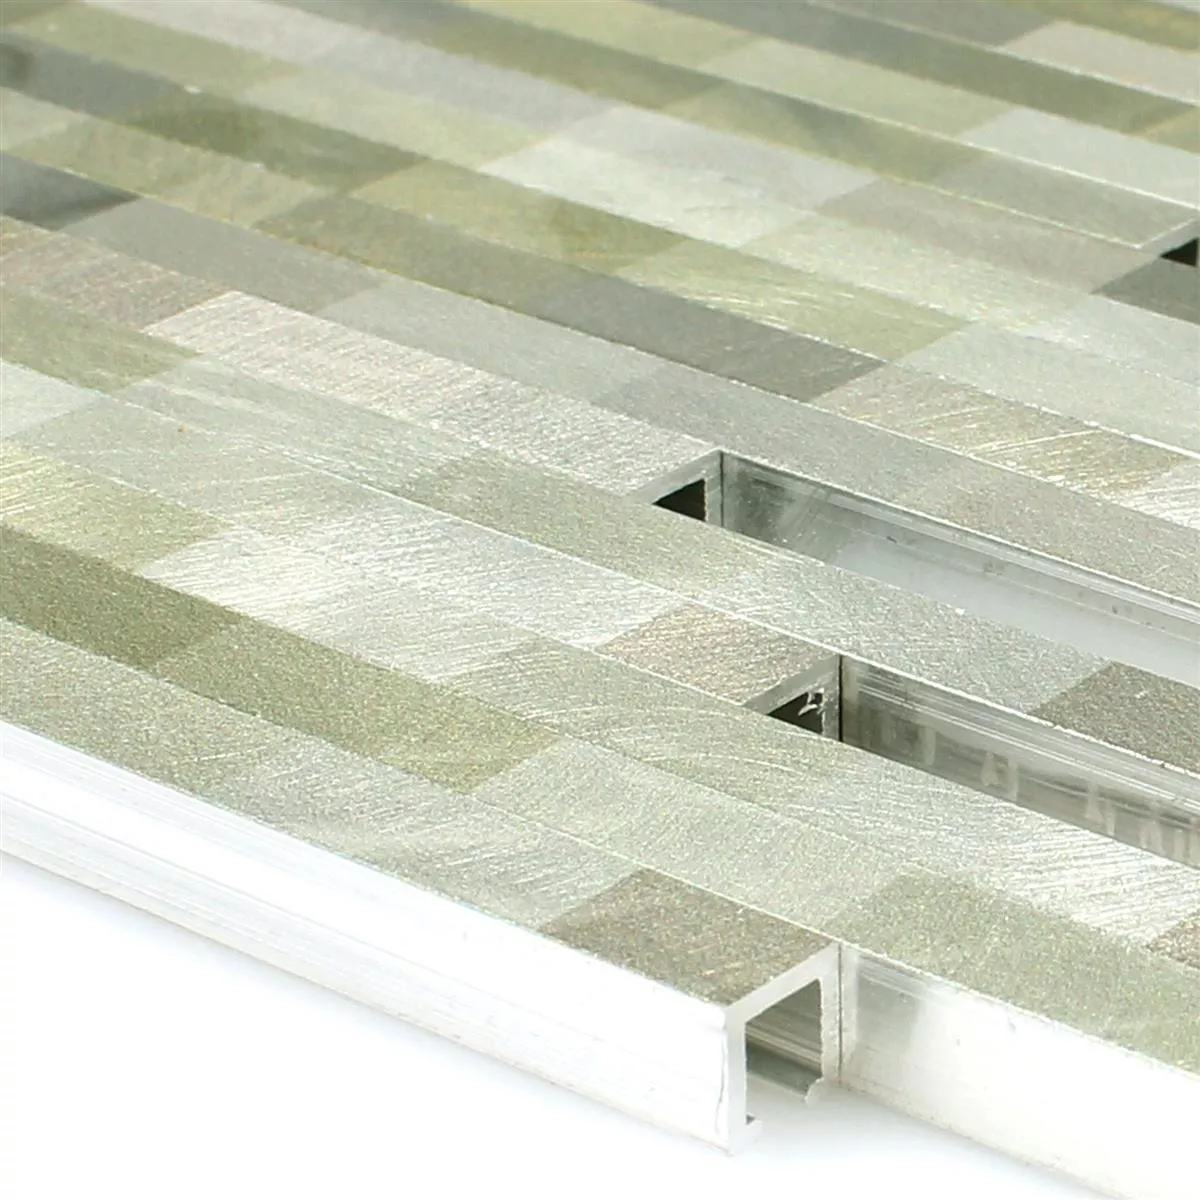 Sample Mosaic Tiles Aluminium Wishbone Green Silver